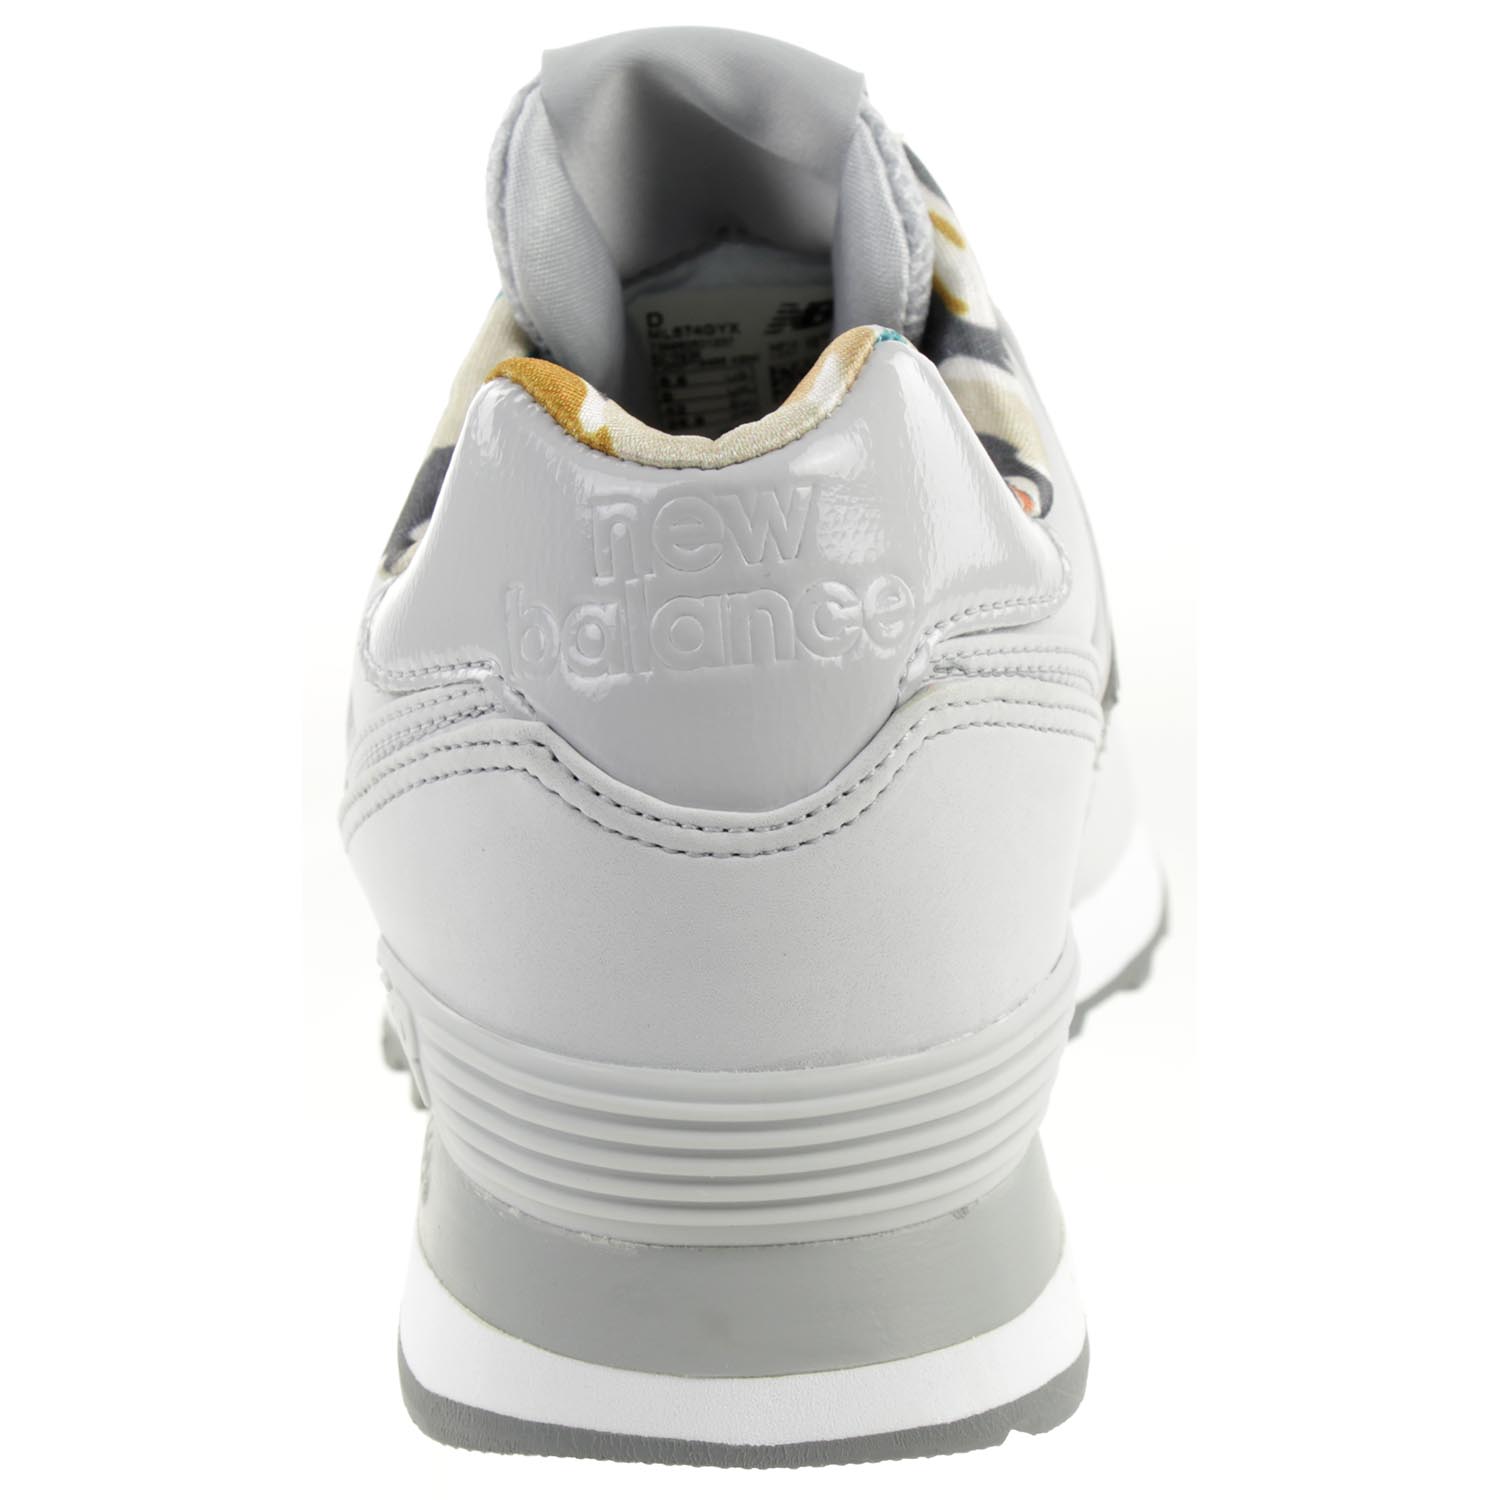 New Balance ML 574 GYX Classic Sneaker Herren Schuhe grau